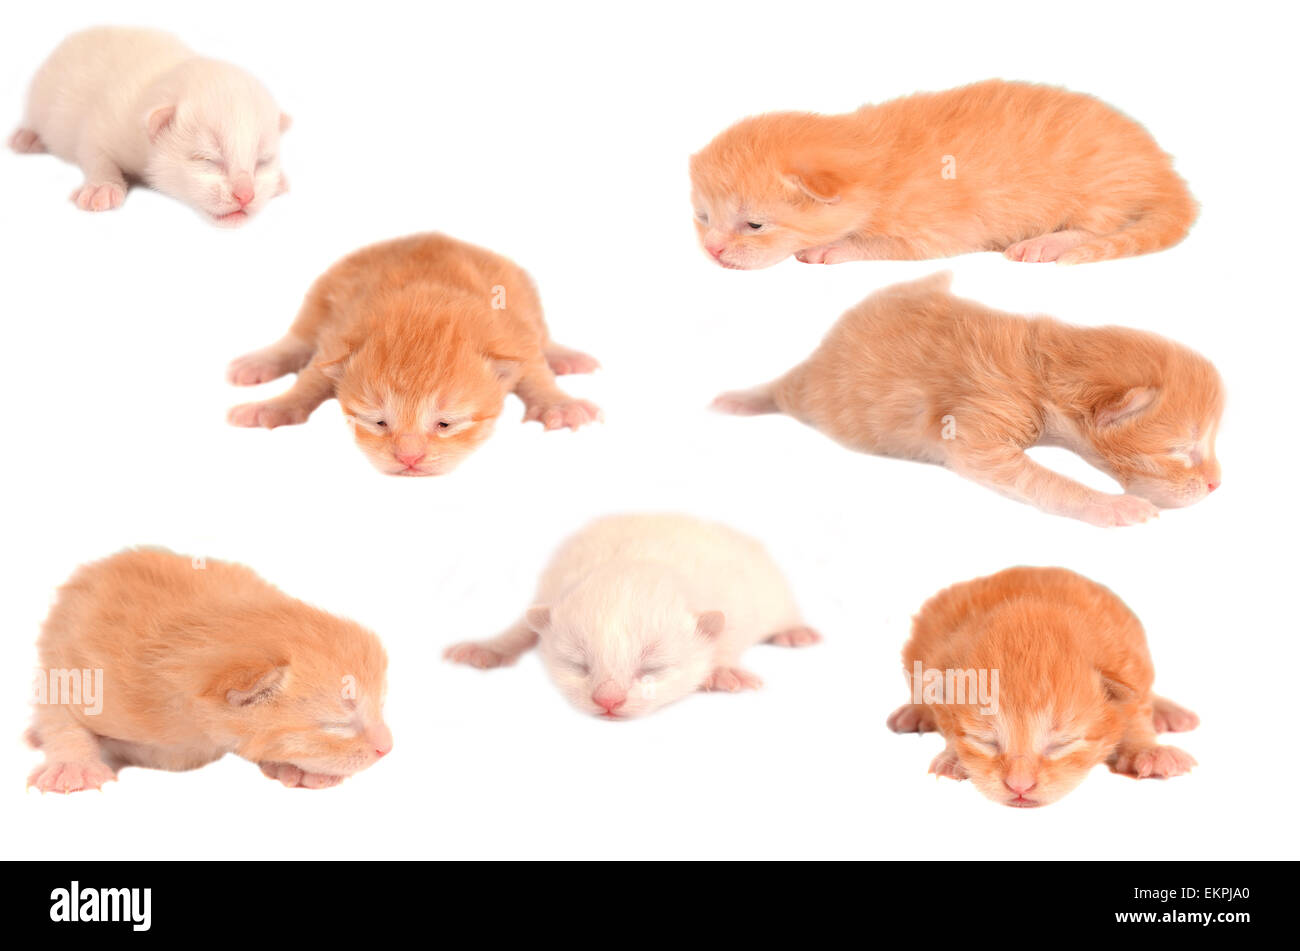 Newborn Kittens on White Stock Photo